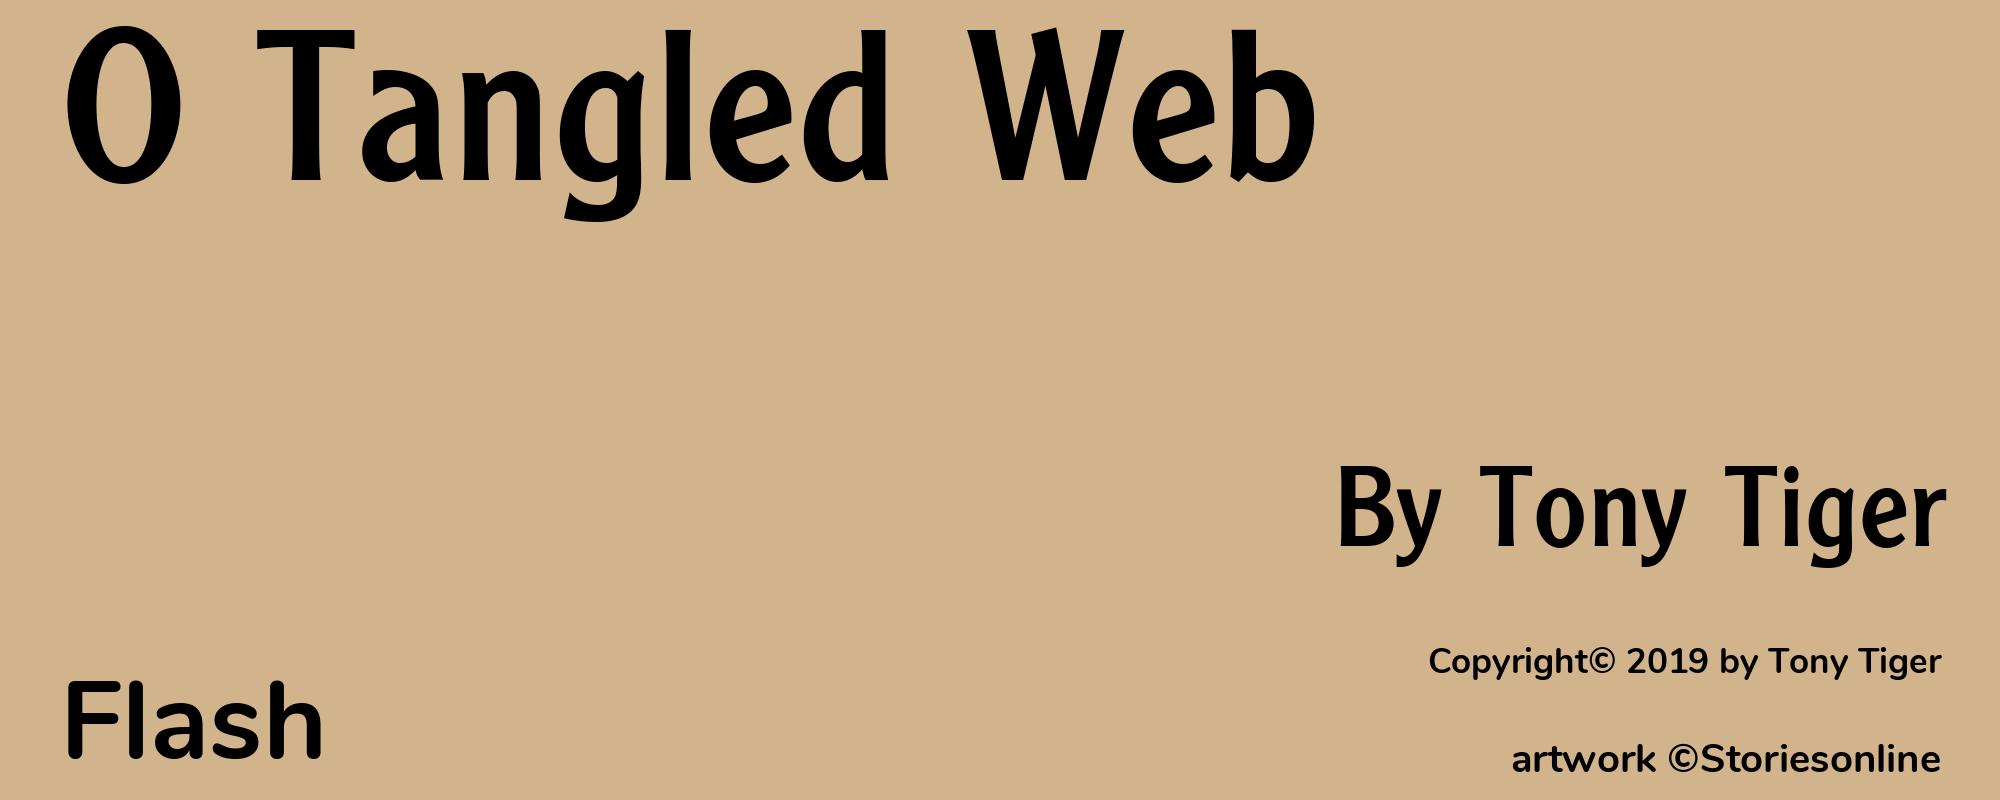 O Tangled Web - Cover